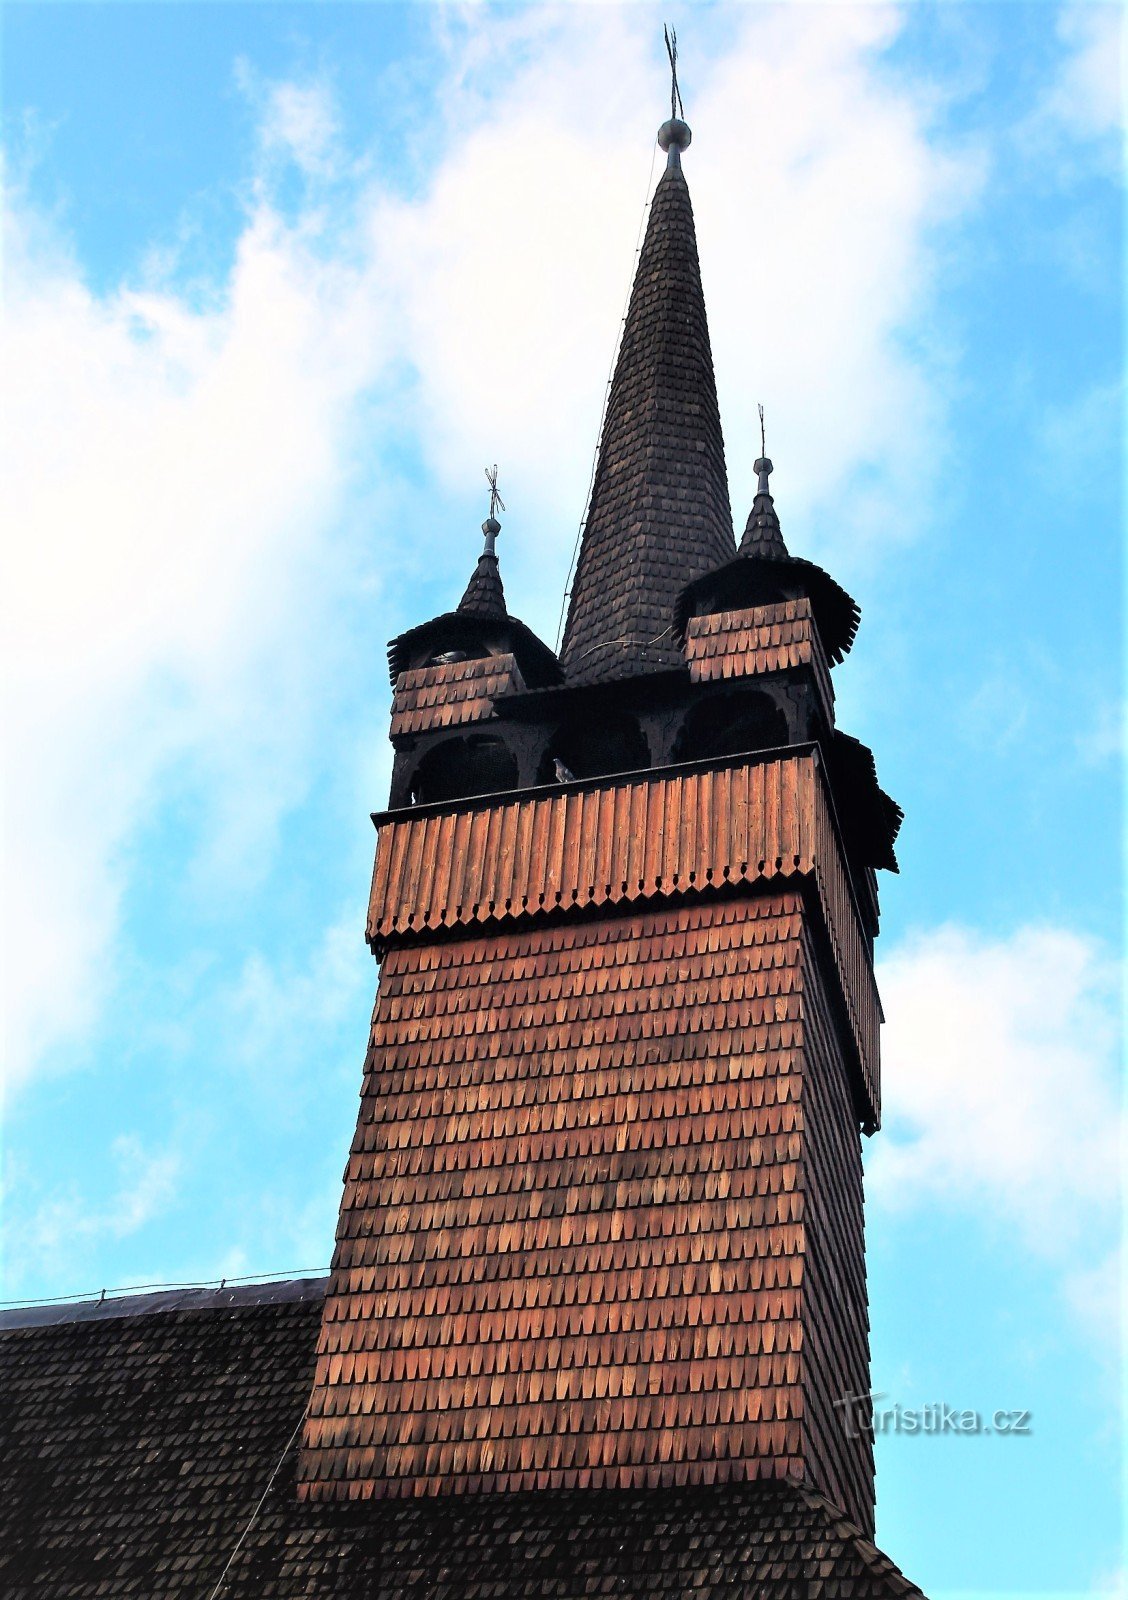 Kúpos tetejű, négyszögletű templomtorony négy saroktoronnyal